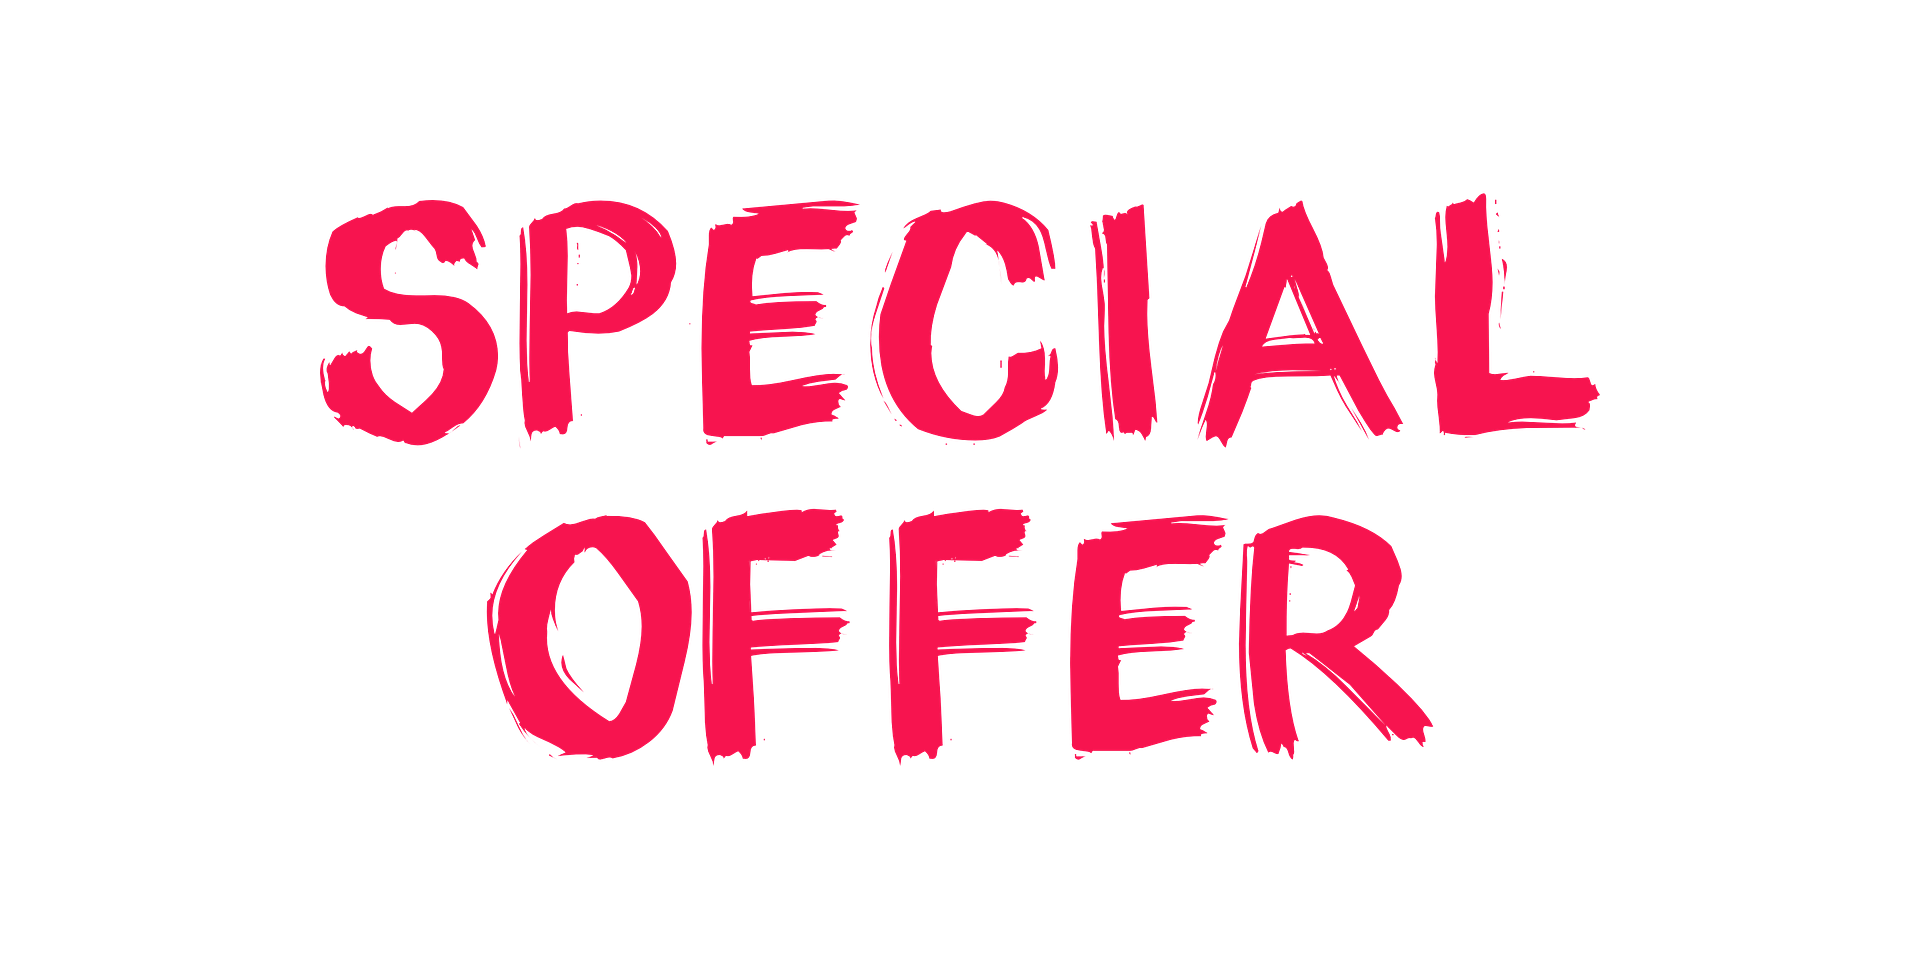 Roter Schriftzug in Großbuchstaben "Special Offer"